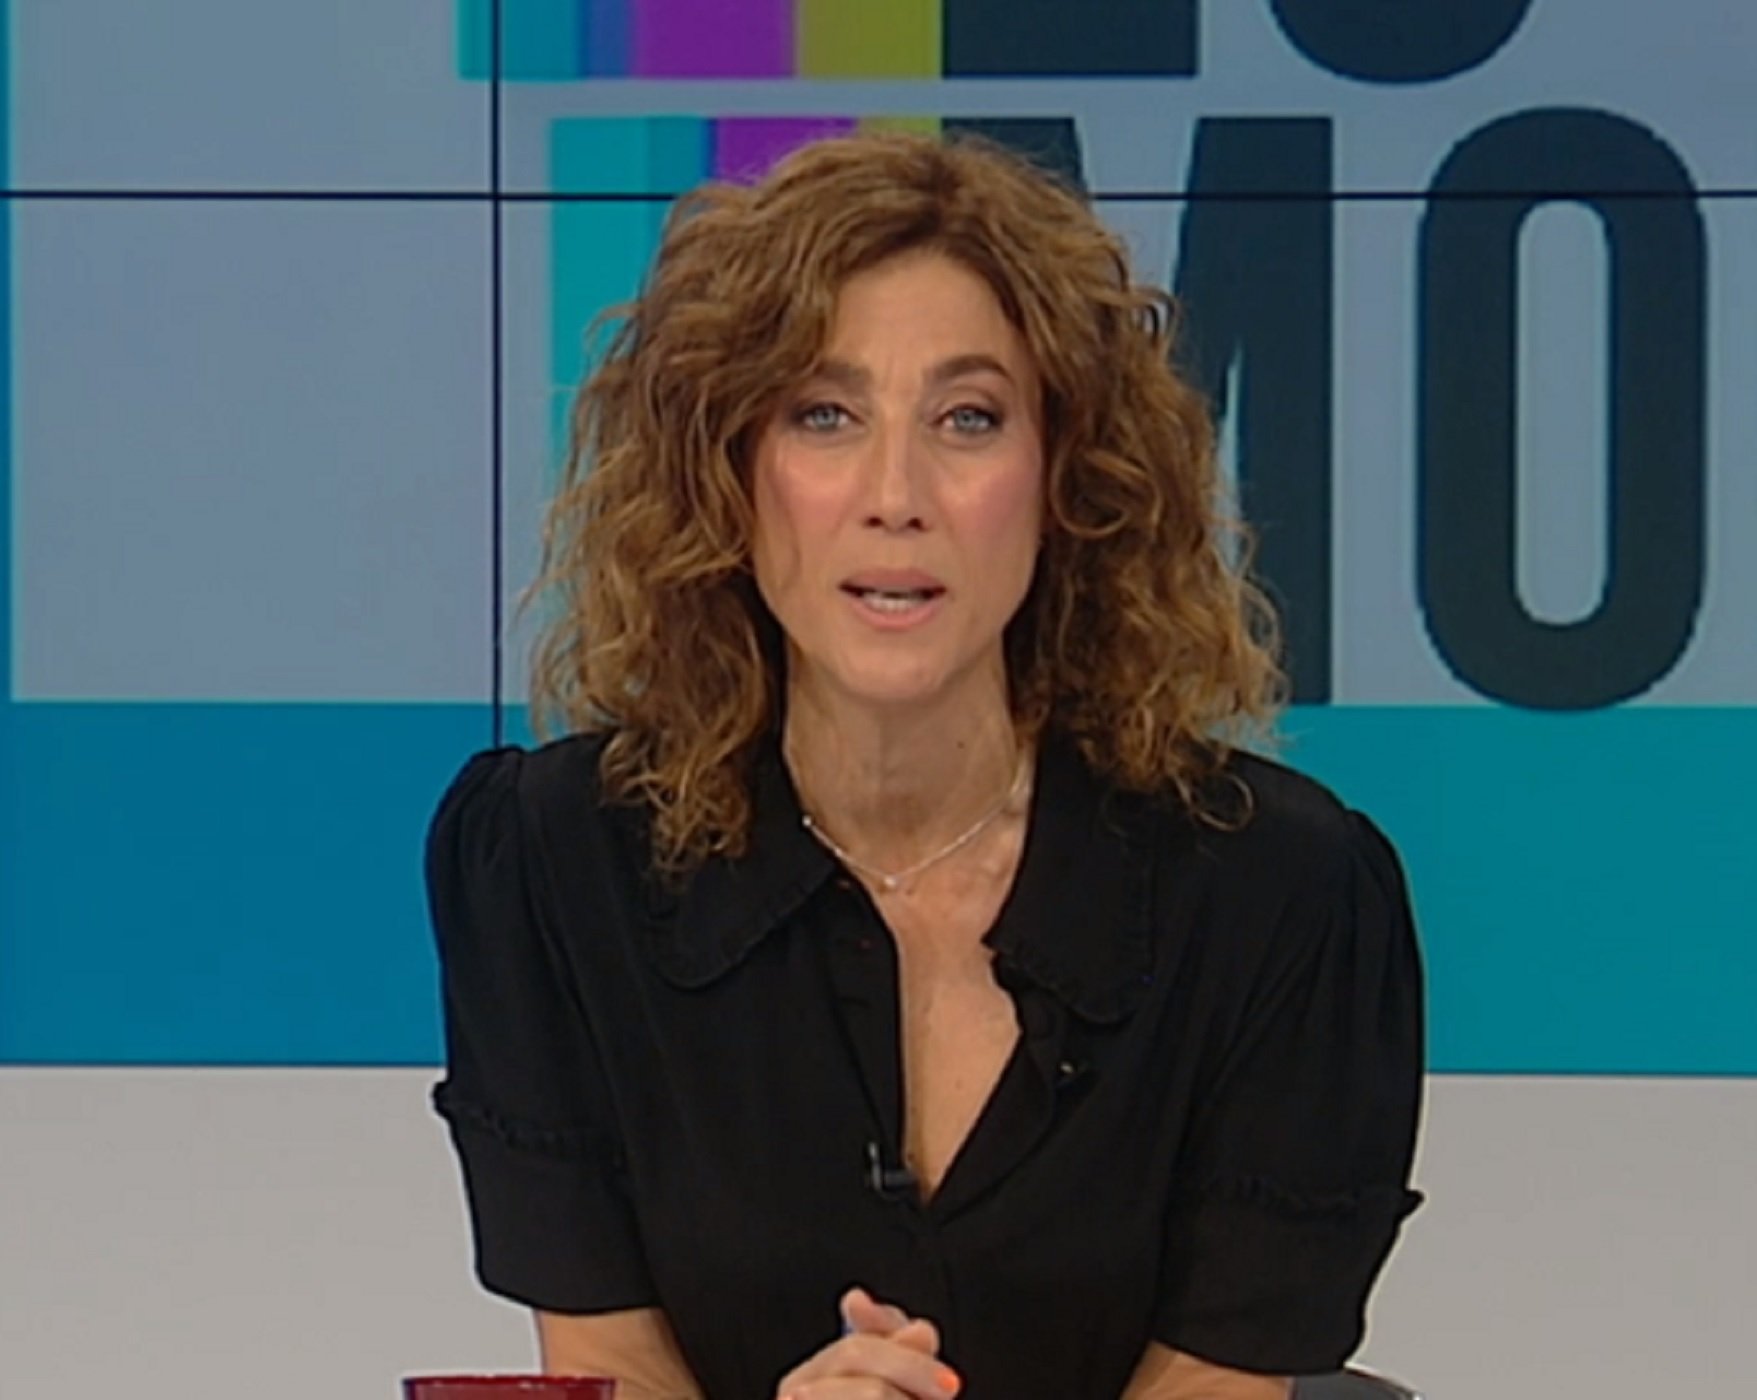 Emotiu comiat d'Helena García Melero a un tertulià mort de TV3